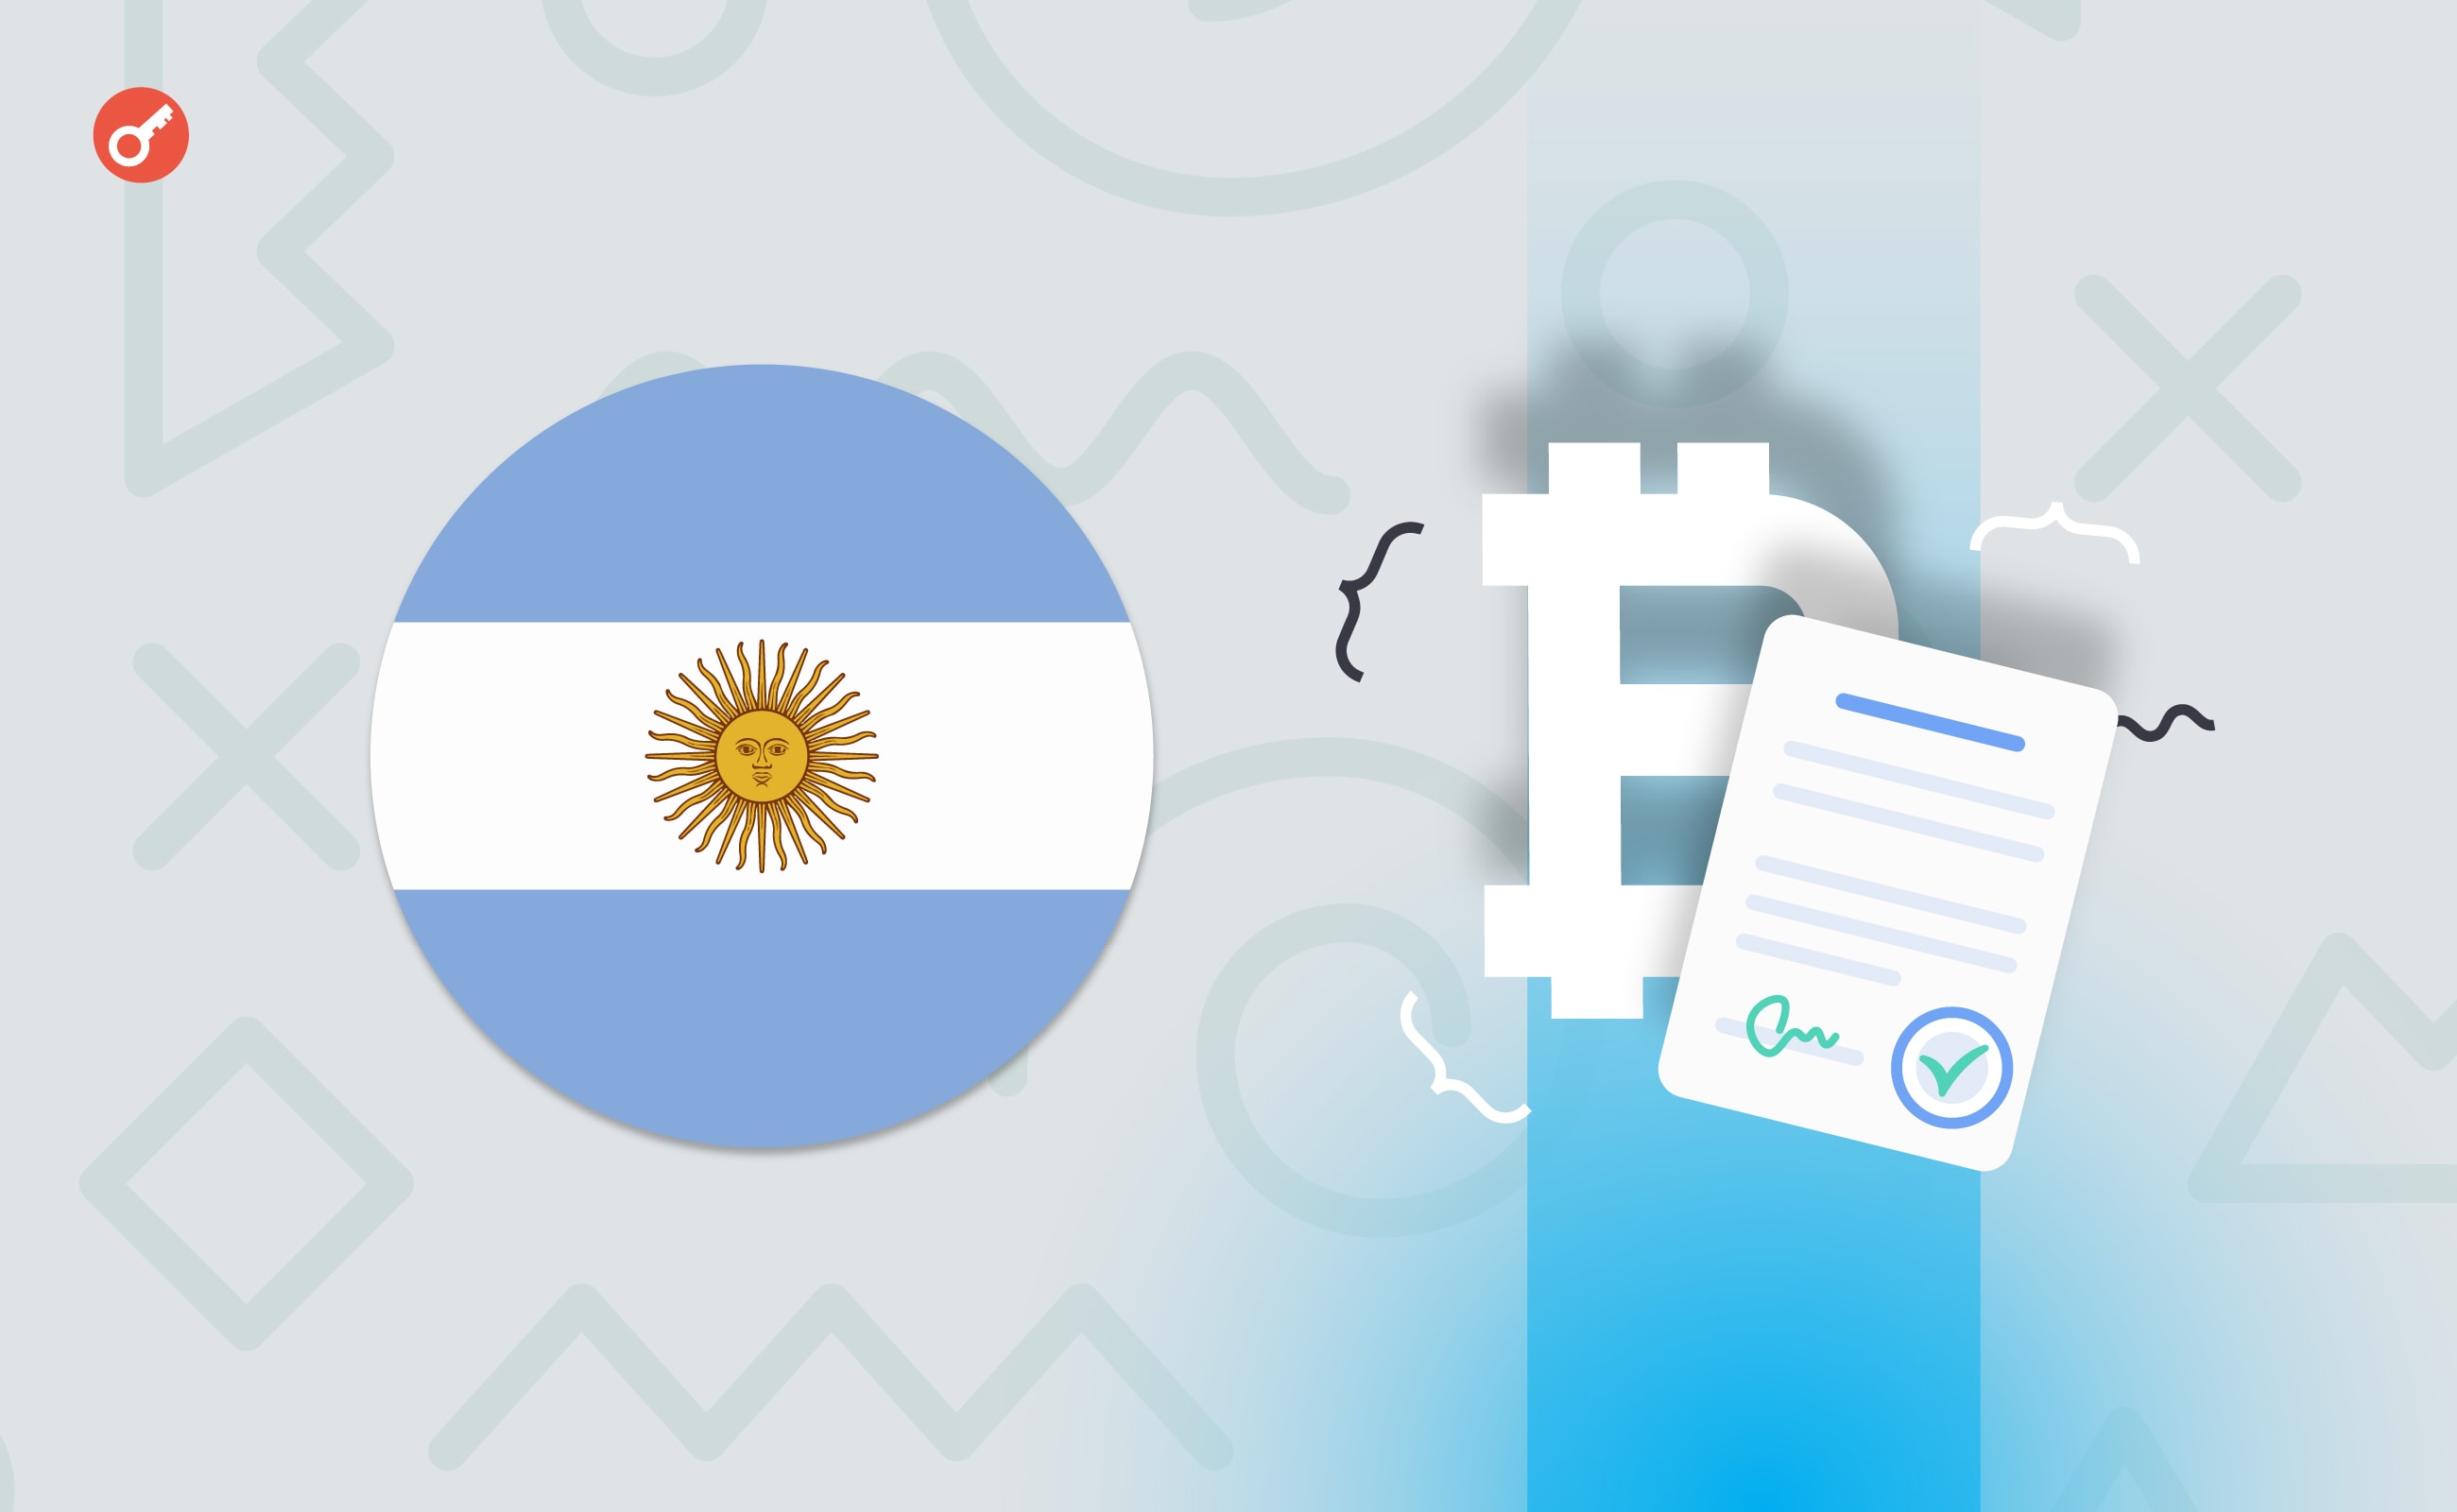 Влада Аргентини скасувала податкові вимоги до криптовалют. Головний колаж новини.